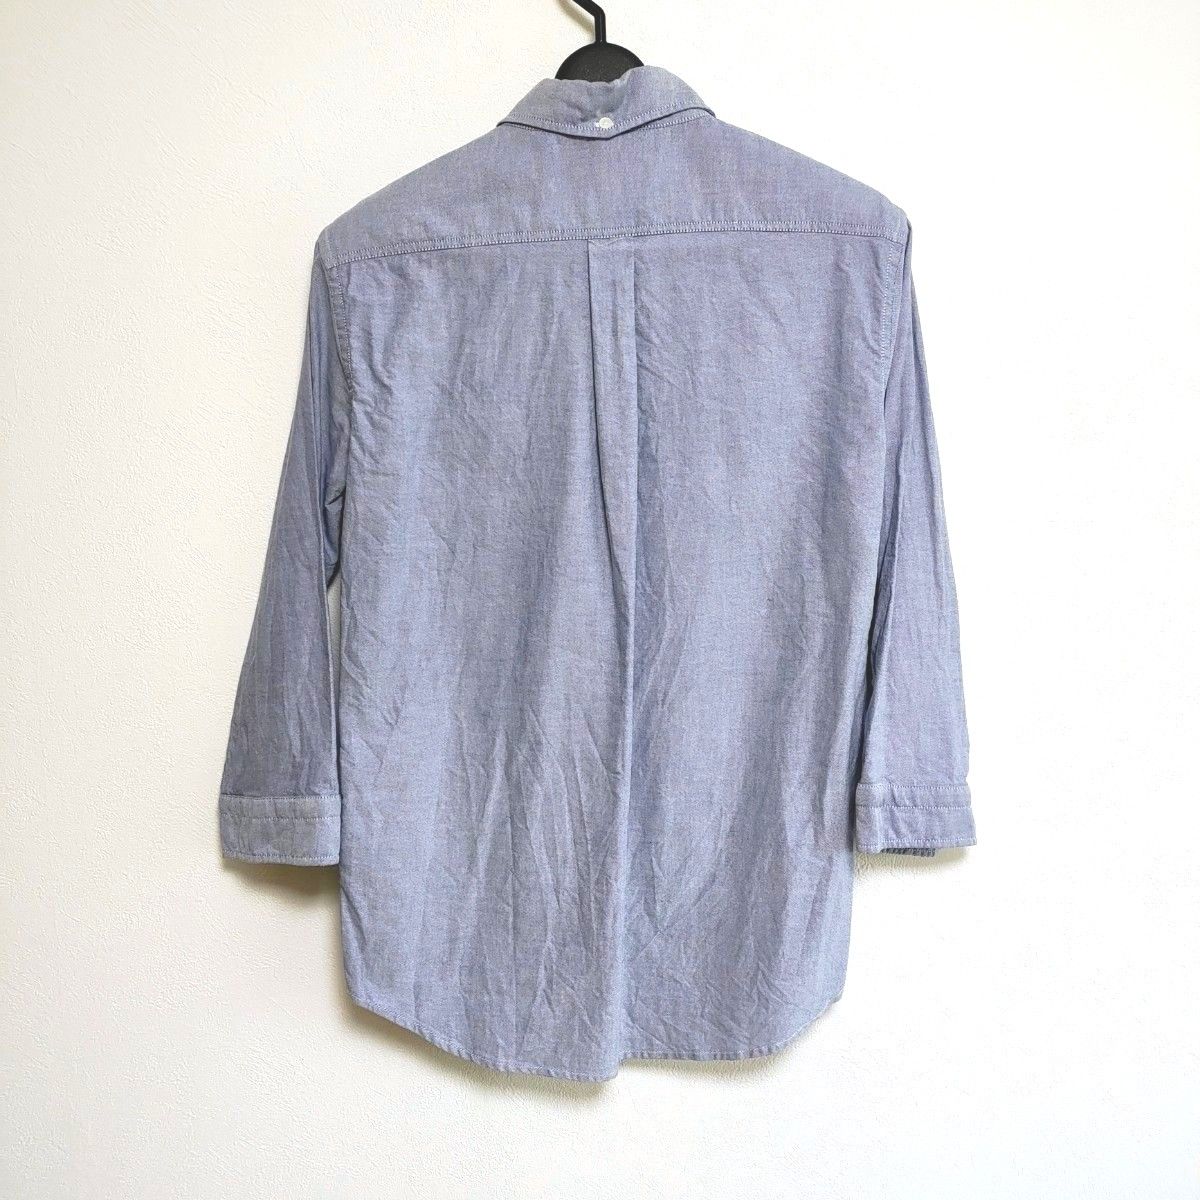 ユニオンステーション メンズビギ メンズ 七分袖 ボタンダウンシャツ 綿100% グレー サイズ02(M相当) 美品